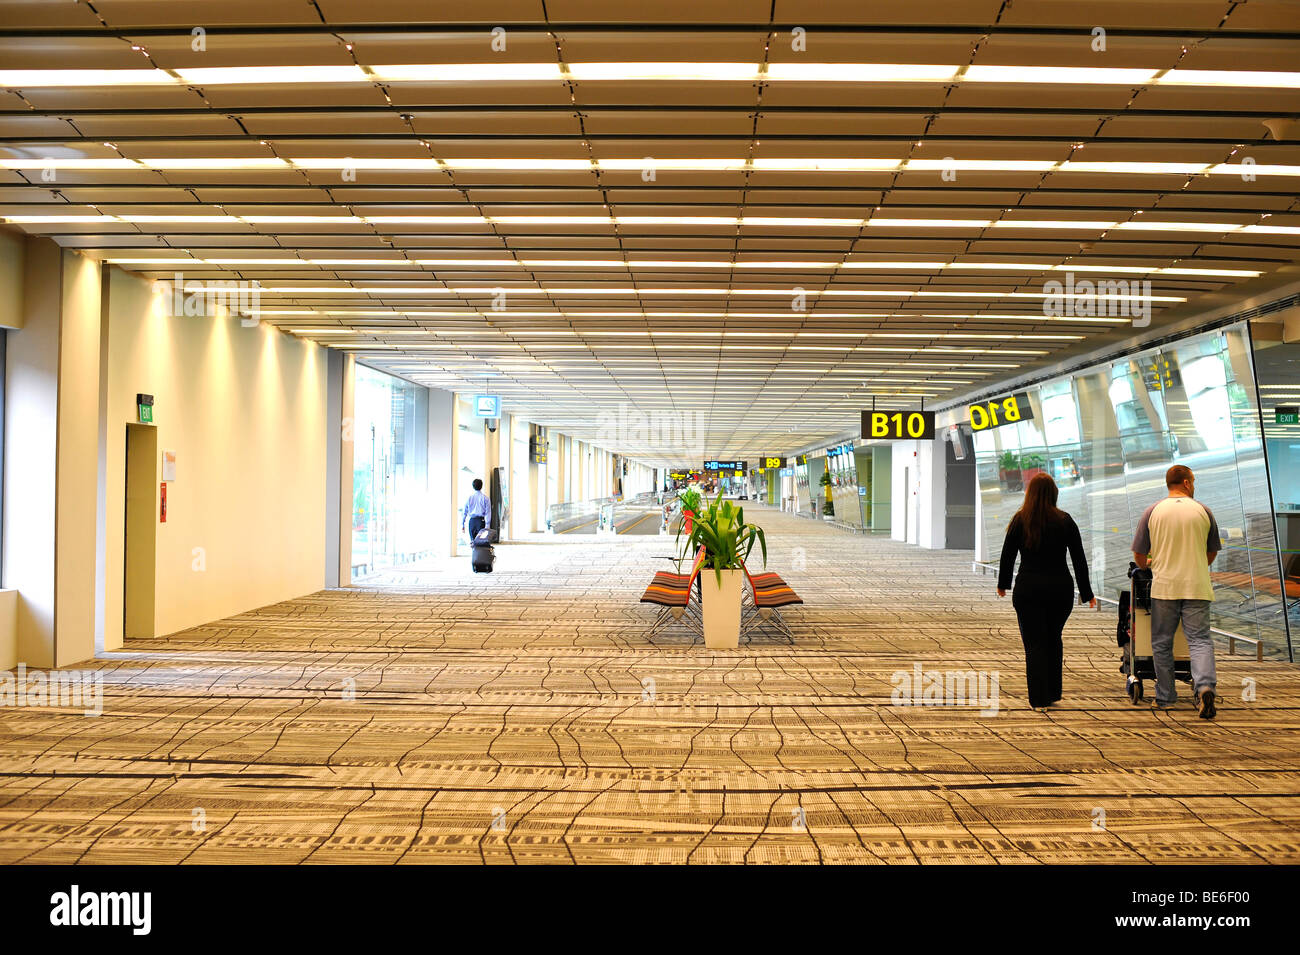 Passeggeri a piedi attraverso la zona di attesa passato cancelli d'imbarco, l'Aeroporto Internazionale di Singapore Changi, Singapore, Asia Foto Stock